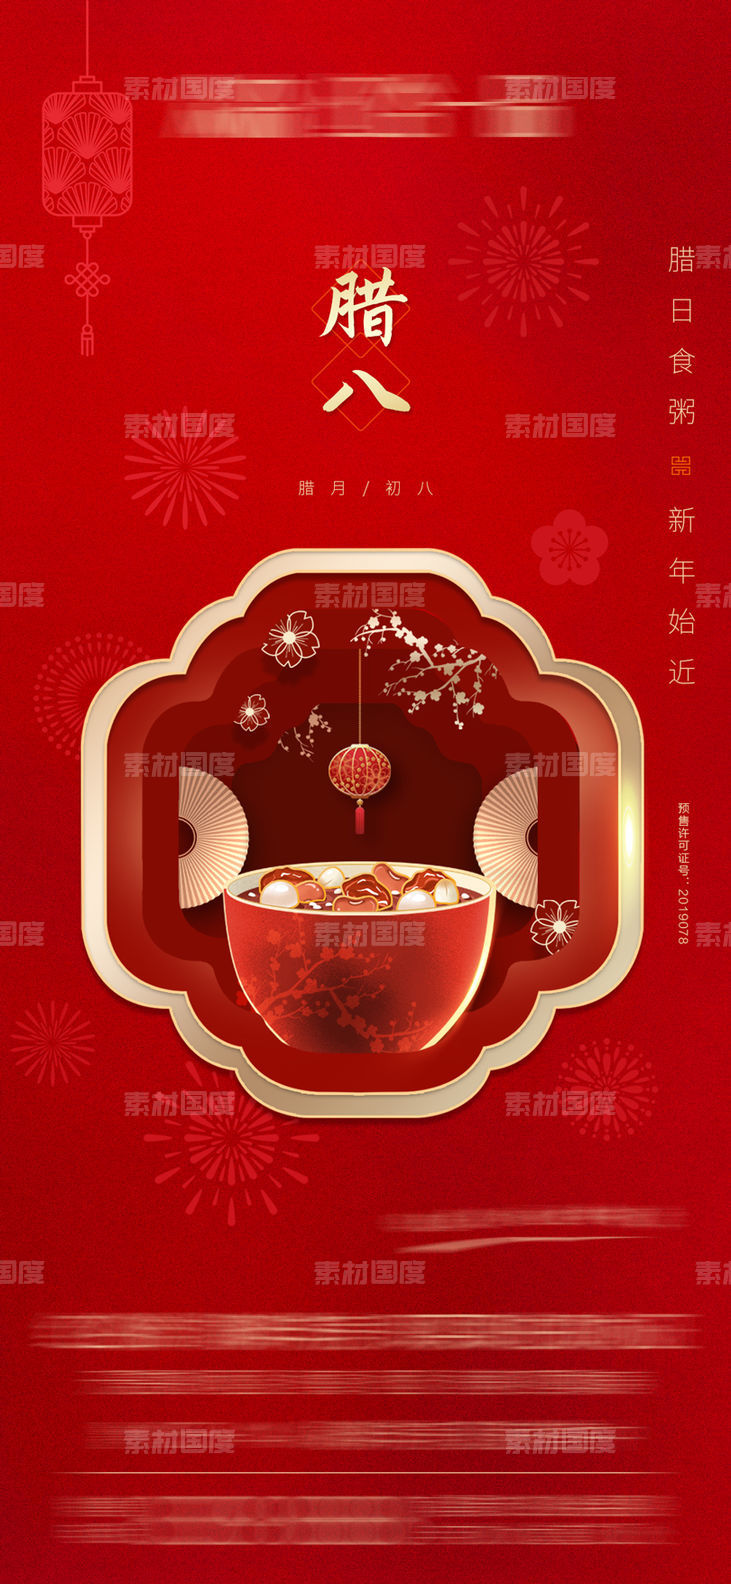 腊八 腊八粥 新年 新春 红色 传统节日